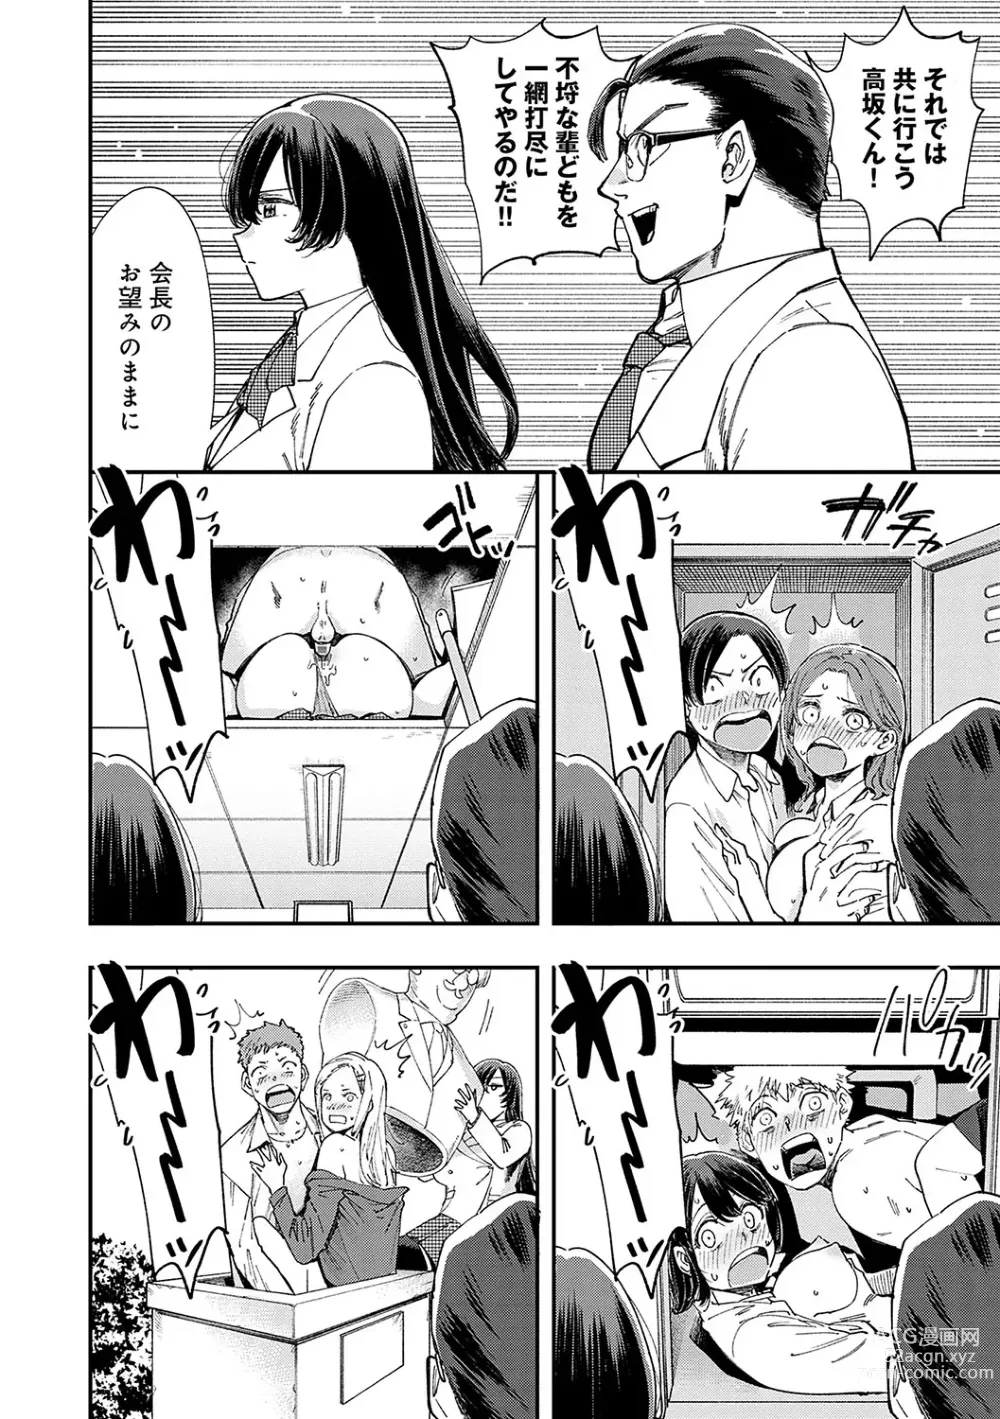 Page 9 of manga Kashikoi Oppai